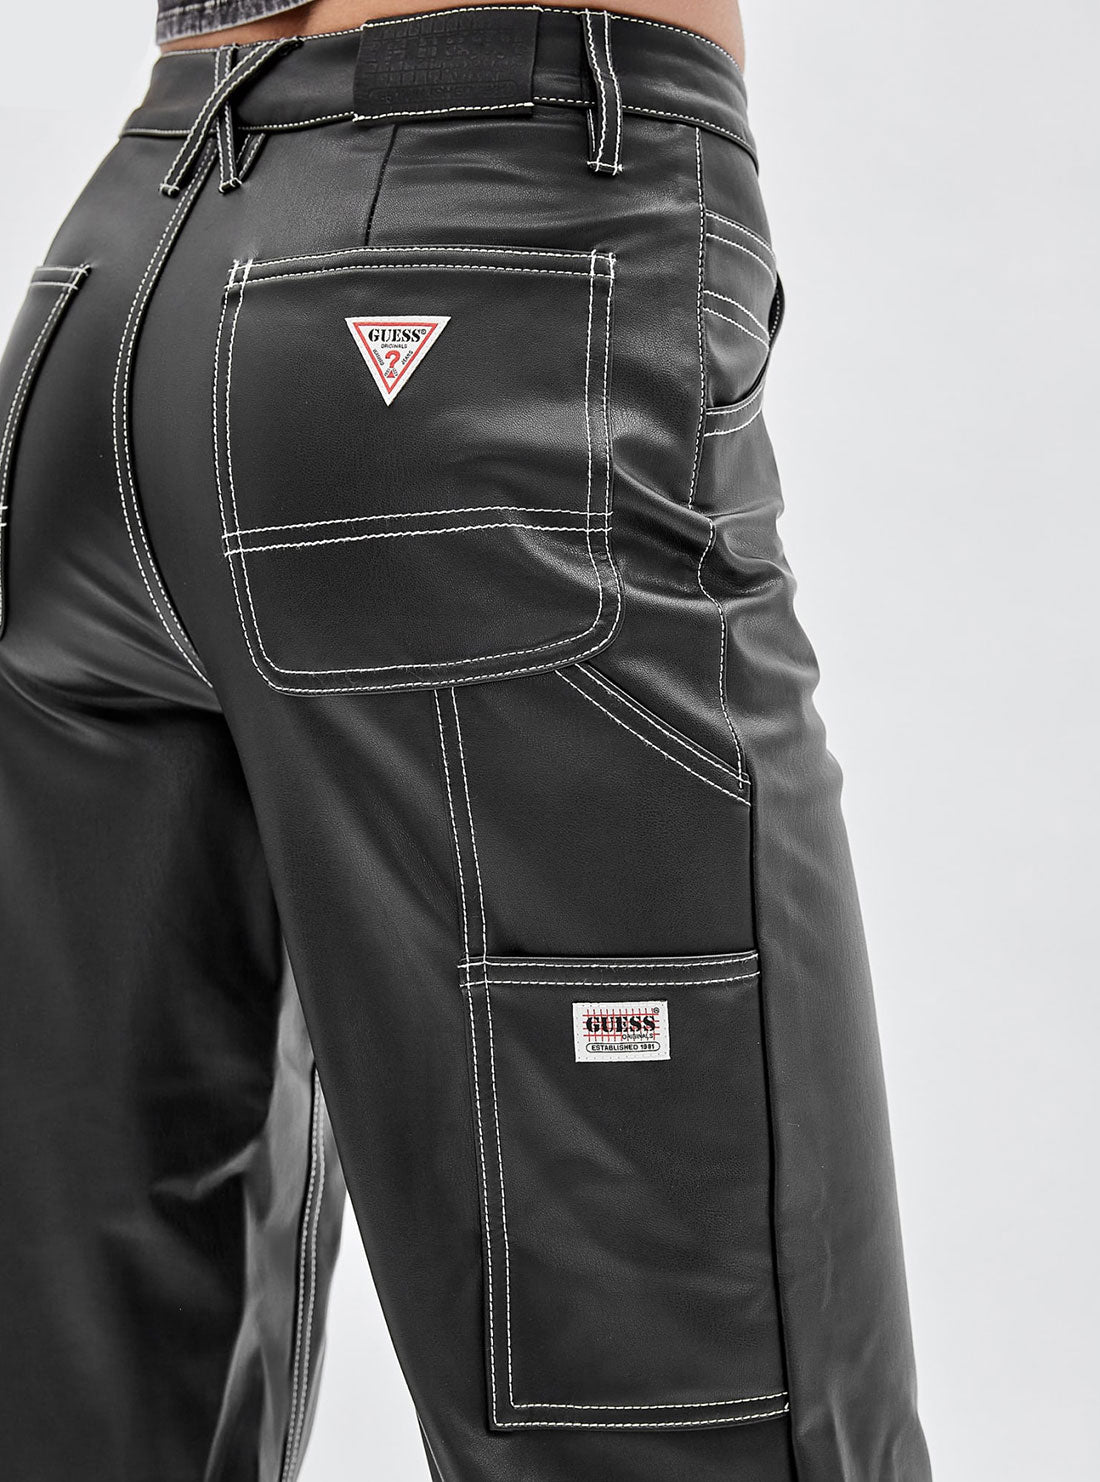 GUESS Women's Guess Originals Black Faux Leather Carpenter Pants W2BG10K8S30 Detail View